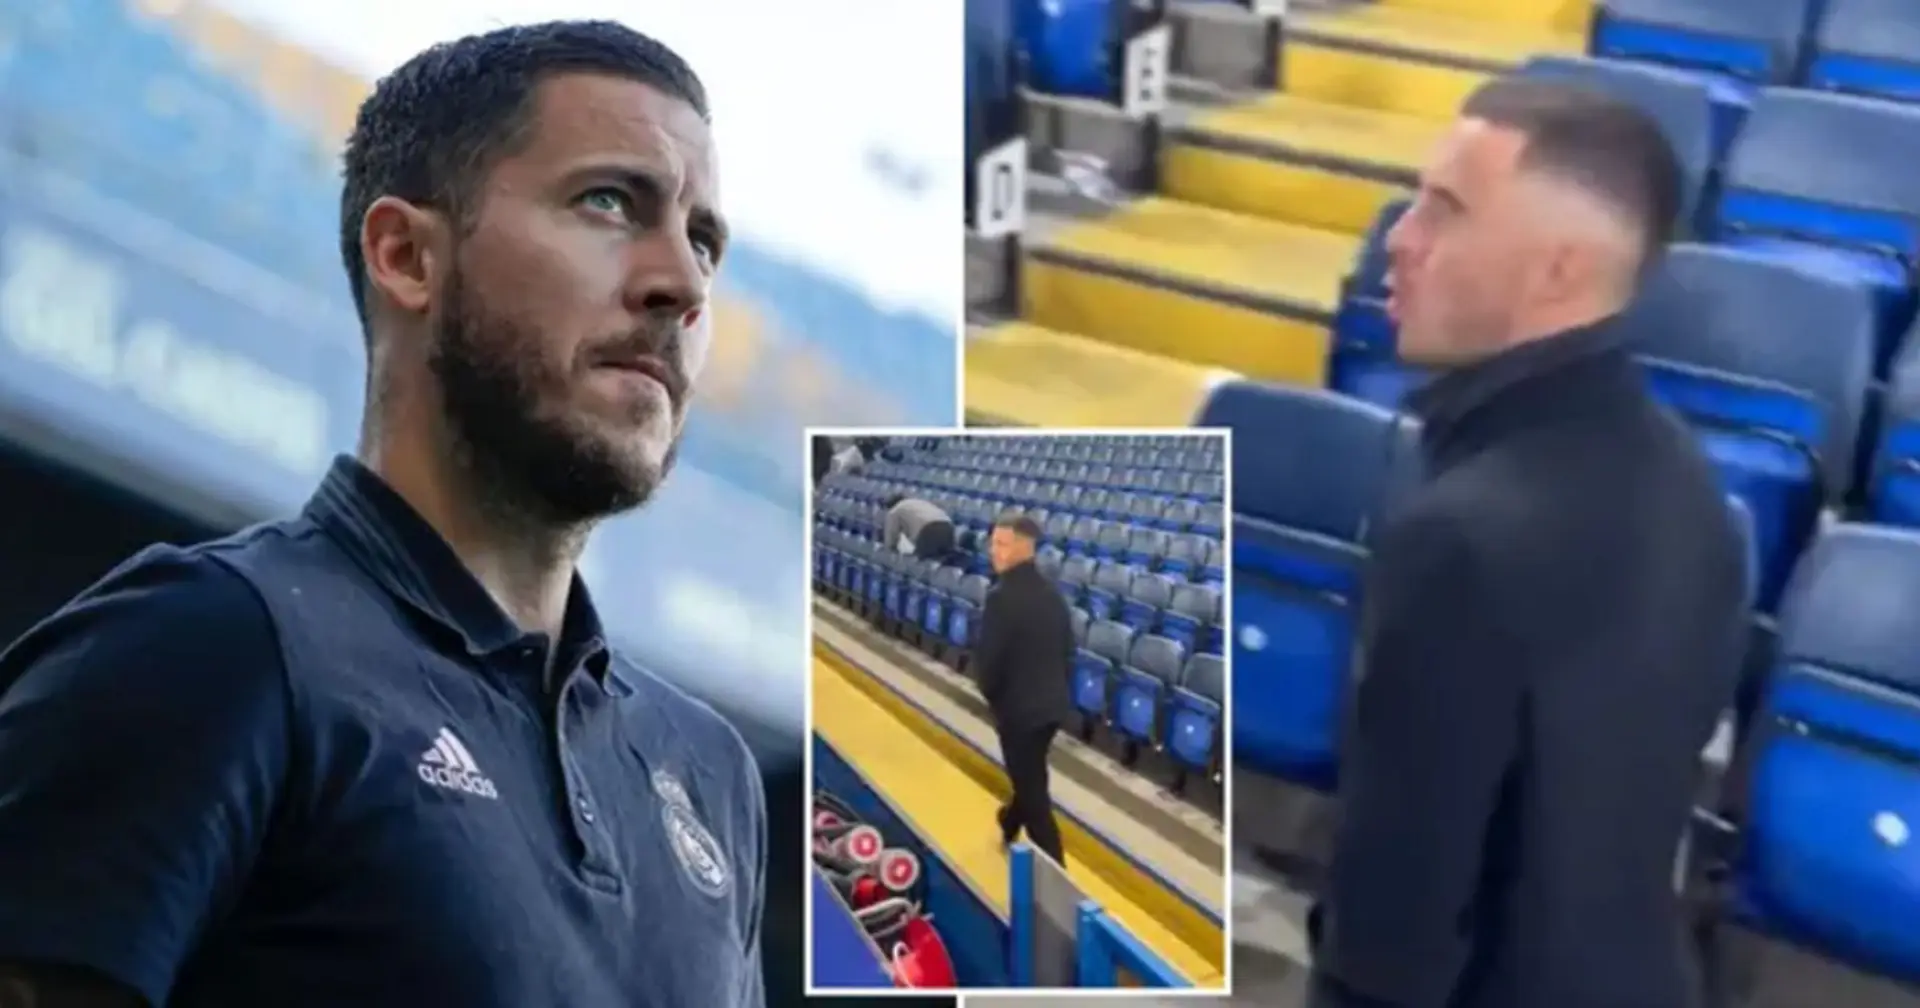 "Komm zurück": Chelseas Mitarbeiter an der Stamford Bridge hat Eden Hazard zurück zum englischen Verein gerufen 